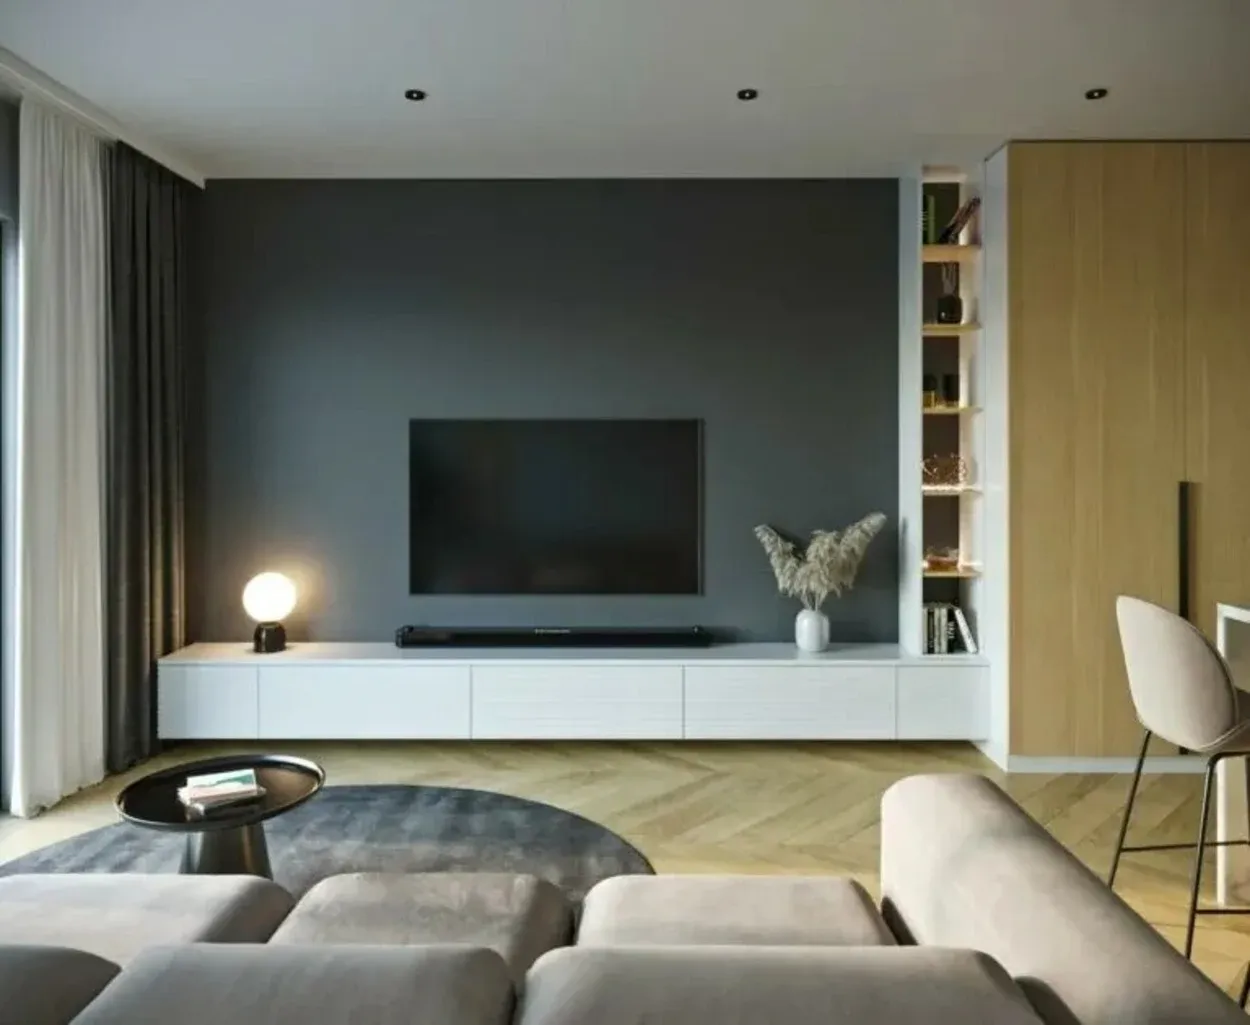 En svart Hisense TV med flatskjerm